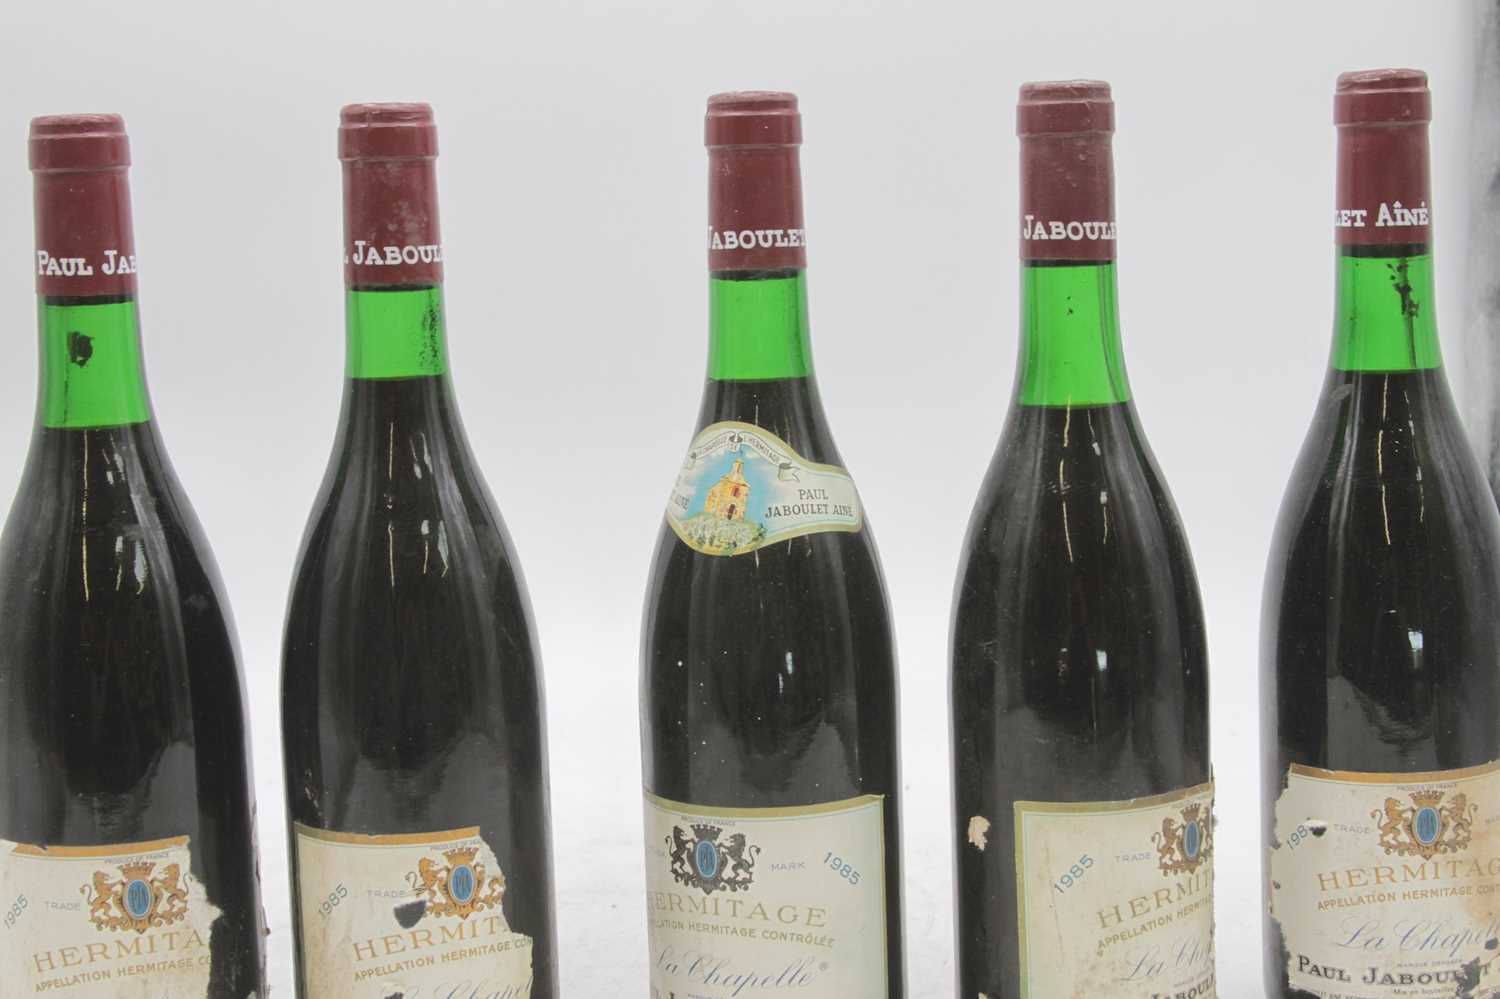 Paul Jaboulet Aine Hermitage La Chapelle 1985 Rhone, 6 bottles - Image 3 of 4